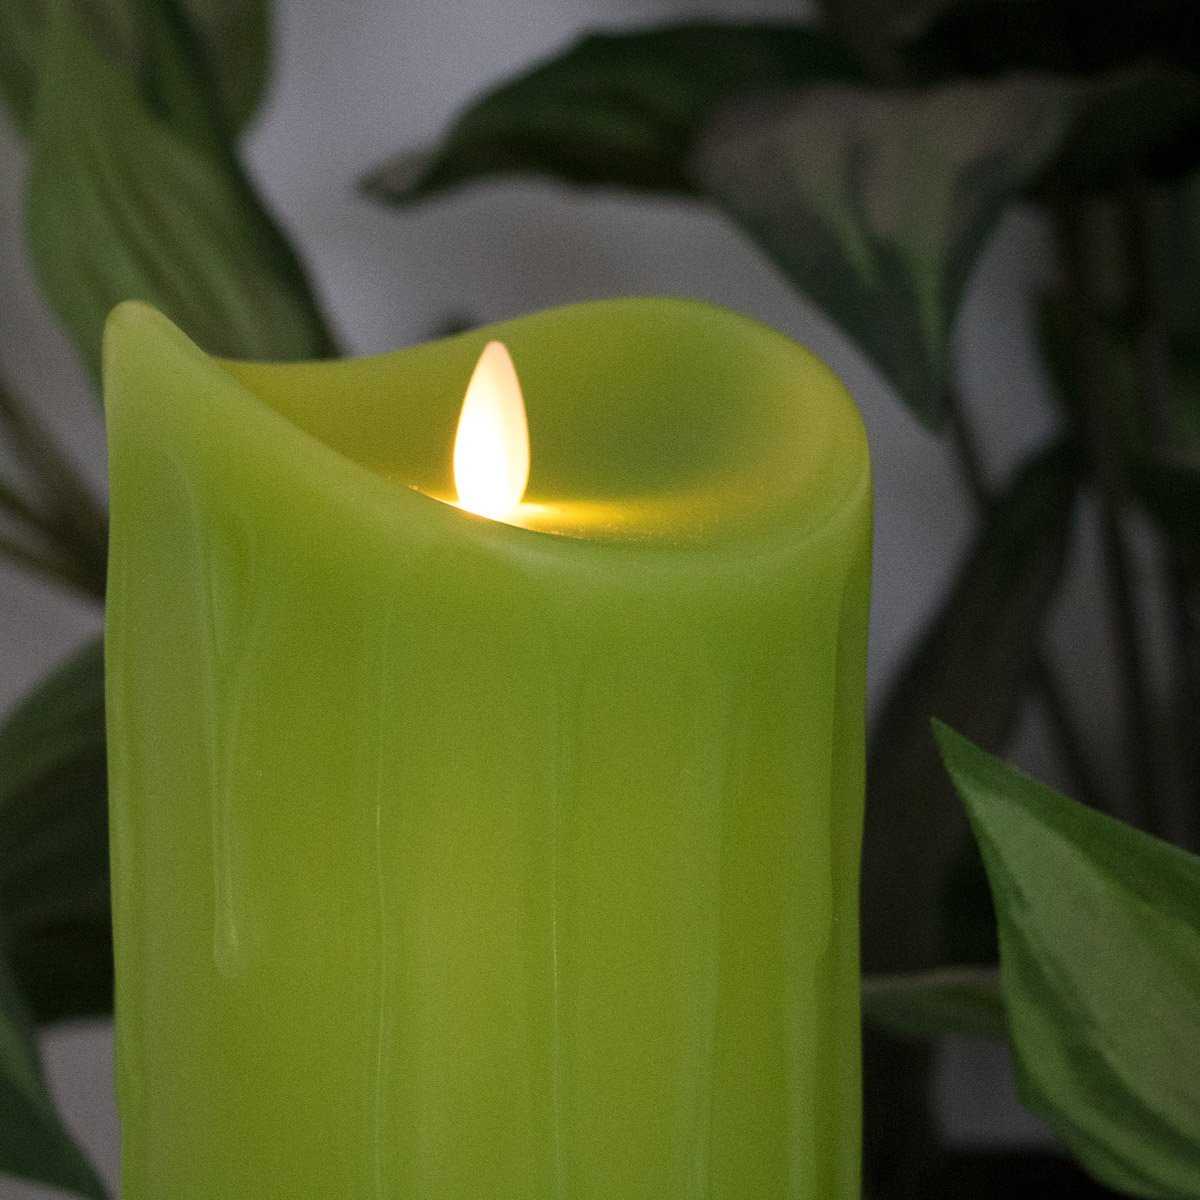 LED-Echtwachskerze mit "Flamme", Hellgrün, 18 cm, Wachstropfendesign